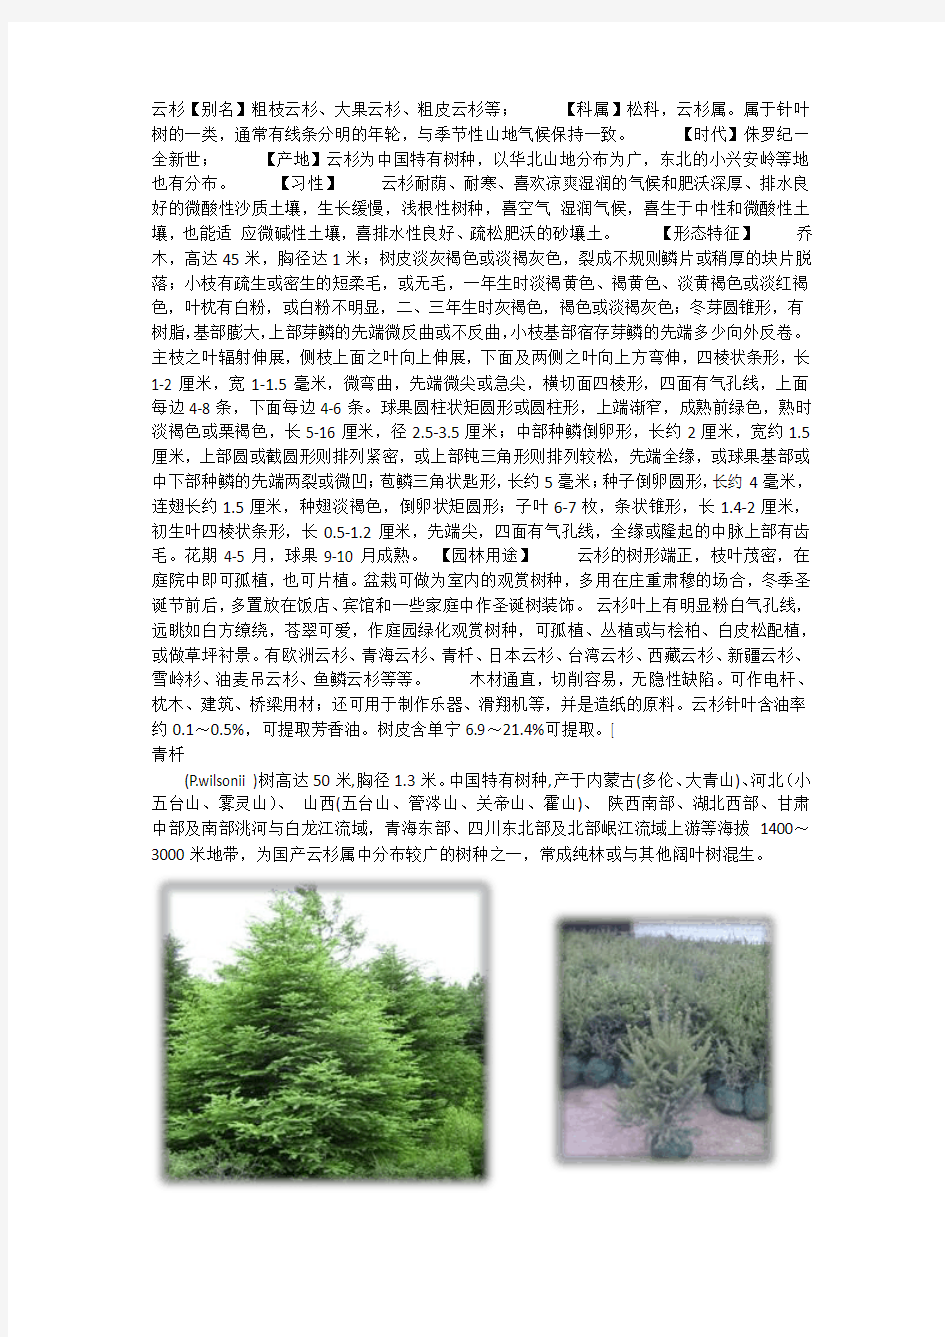 针叶树类植物